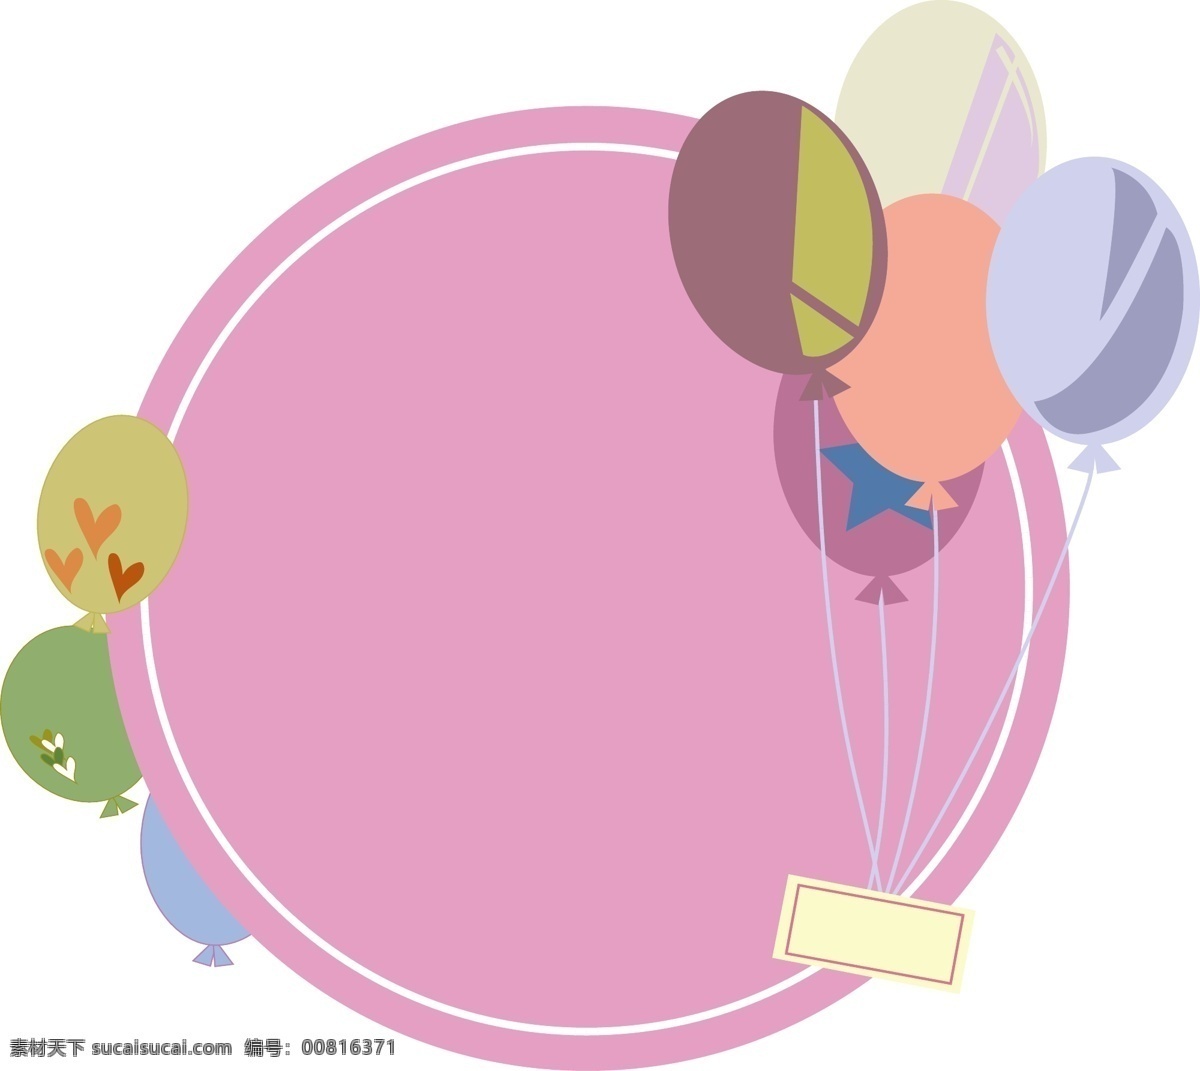 矢量 手绘 卡通 气球 边框 背景 底纹 粉色 黄色 绿色 橘黄色 紫色 蓝色 圆形 爆炸